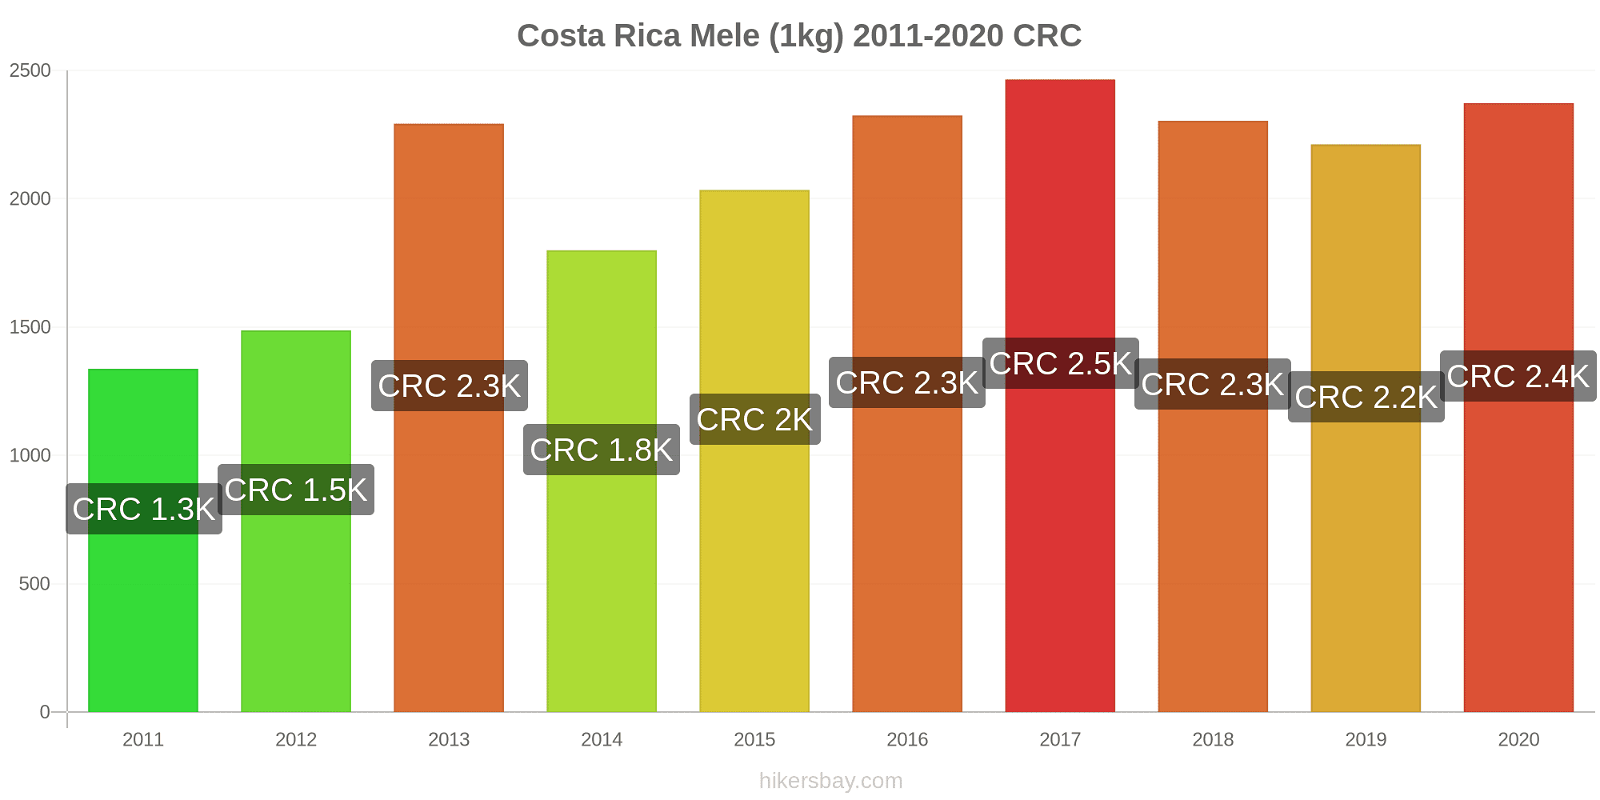 Costa Rica variazioni di prezzo Mele (1kg) hikersbay.com